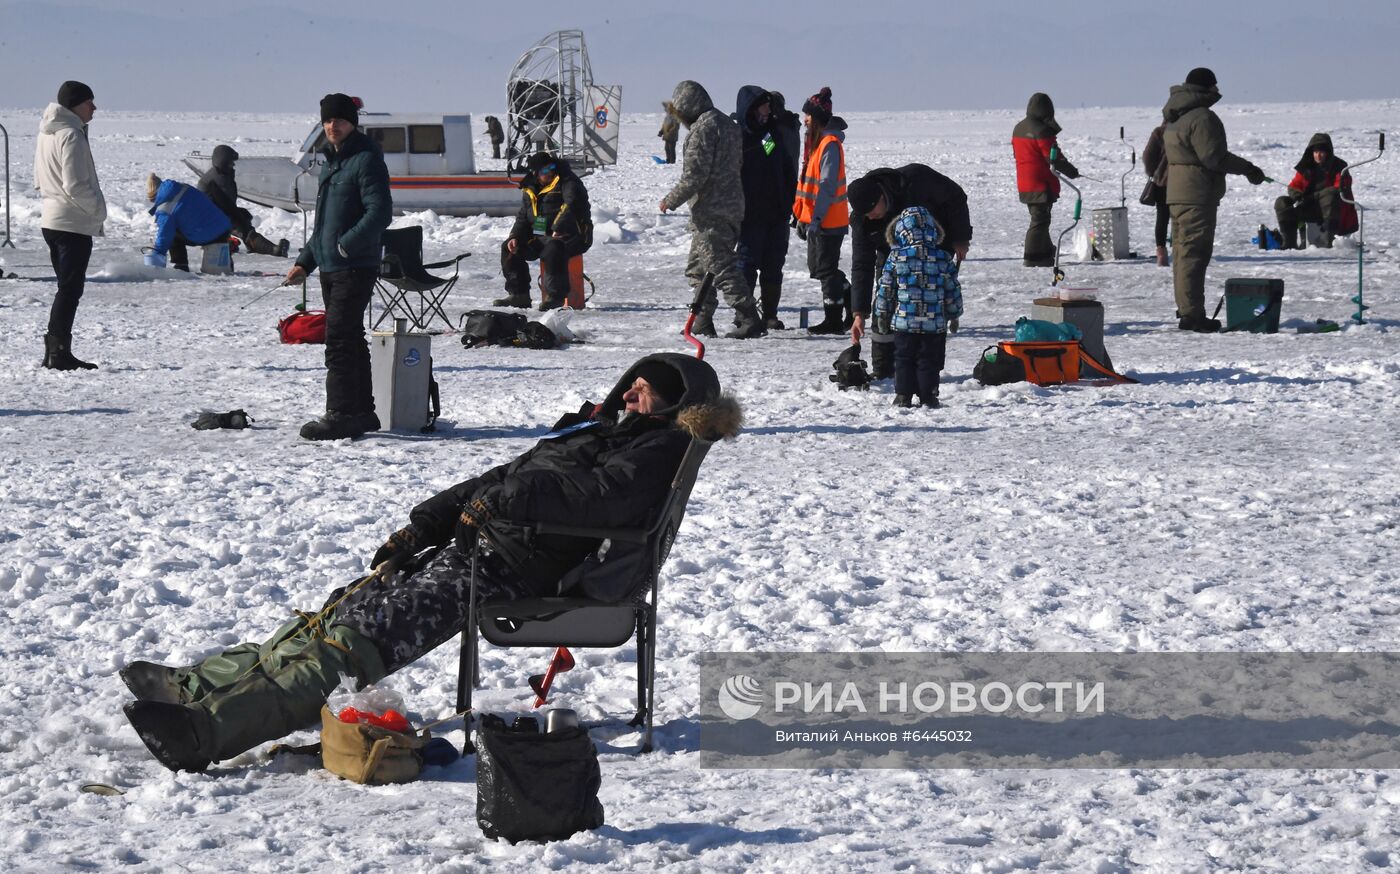 Фестиваль подледного лова рыбы "Народная рыбалка" и гастрономический "Фестиваль корюшки" во Владивостоке